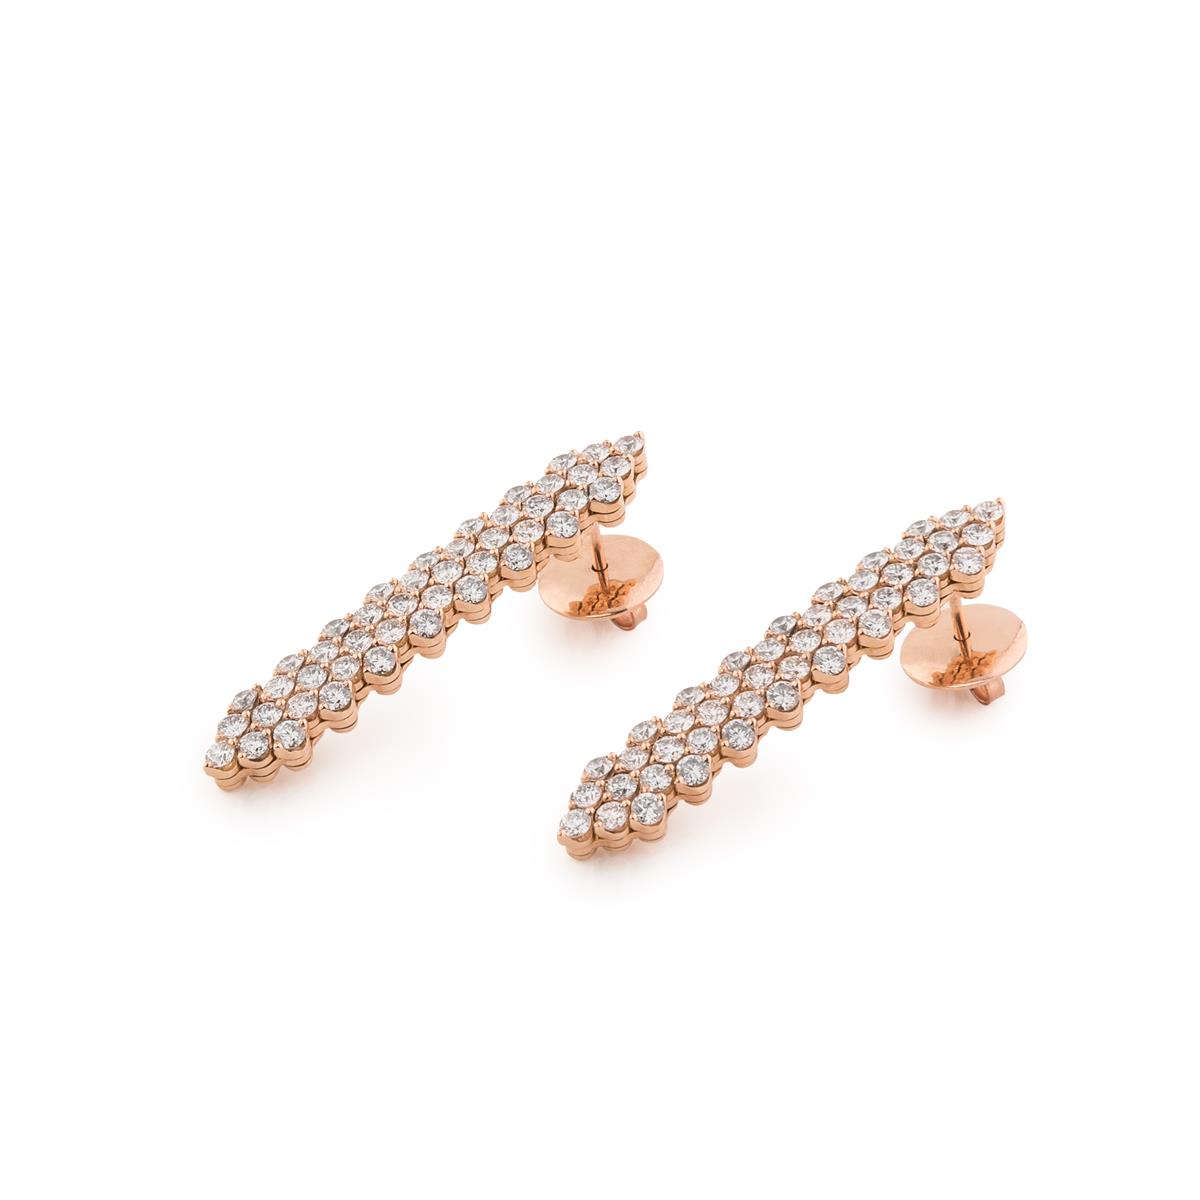 Juwelier Kruzik - Michael Kruzik Luxury Concept - Serafino Consoli_multisize_earrings_1